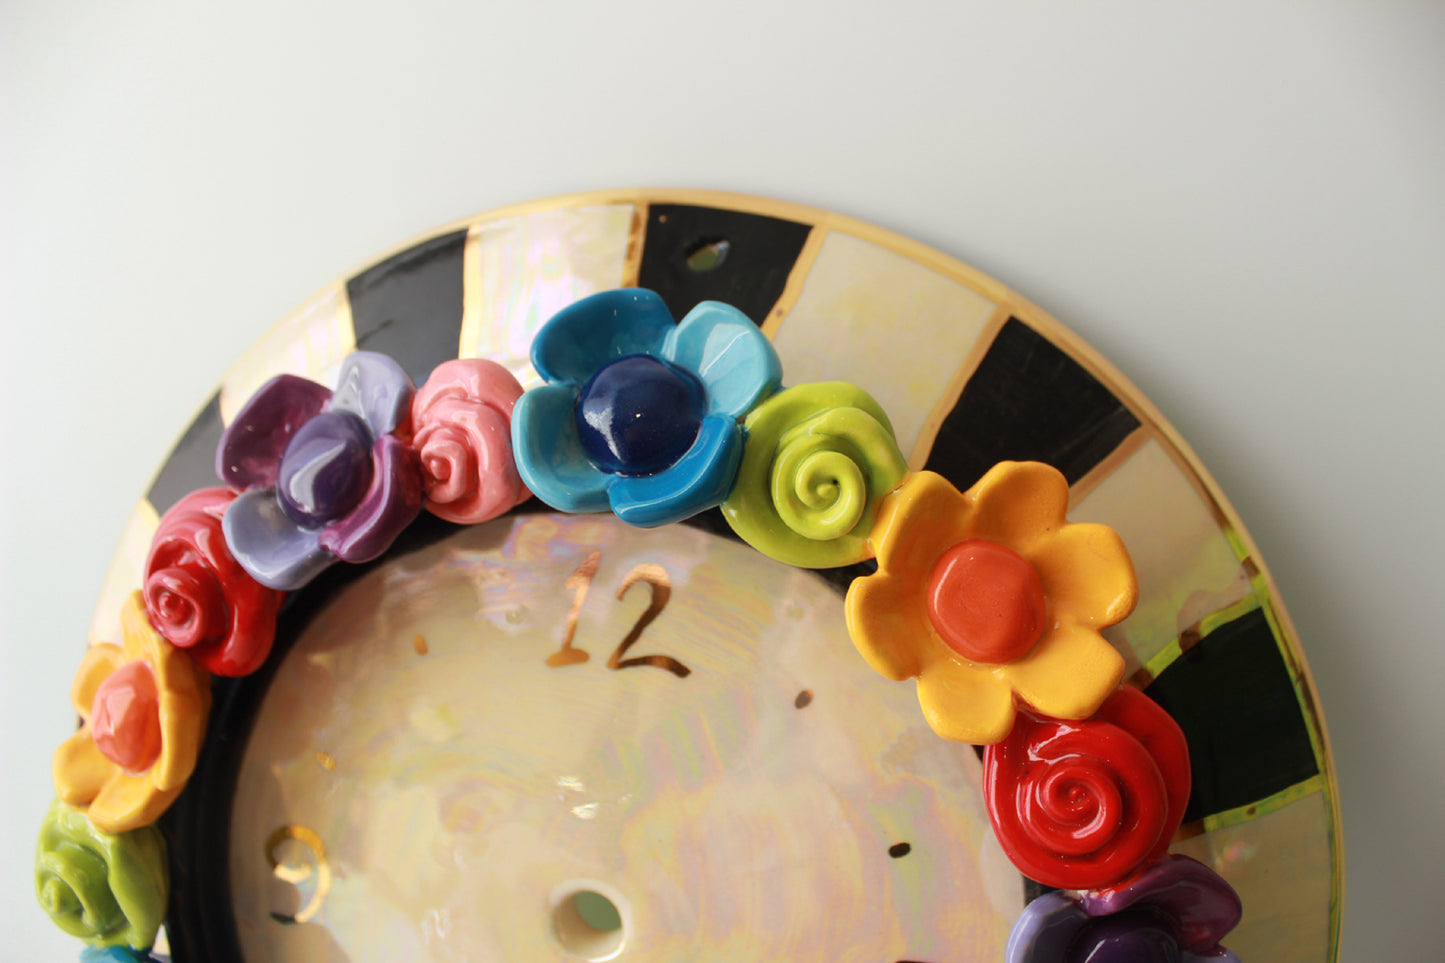 Multiflower Encrusted Clock